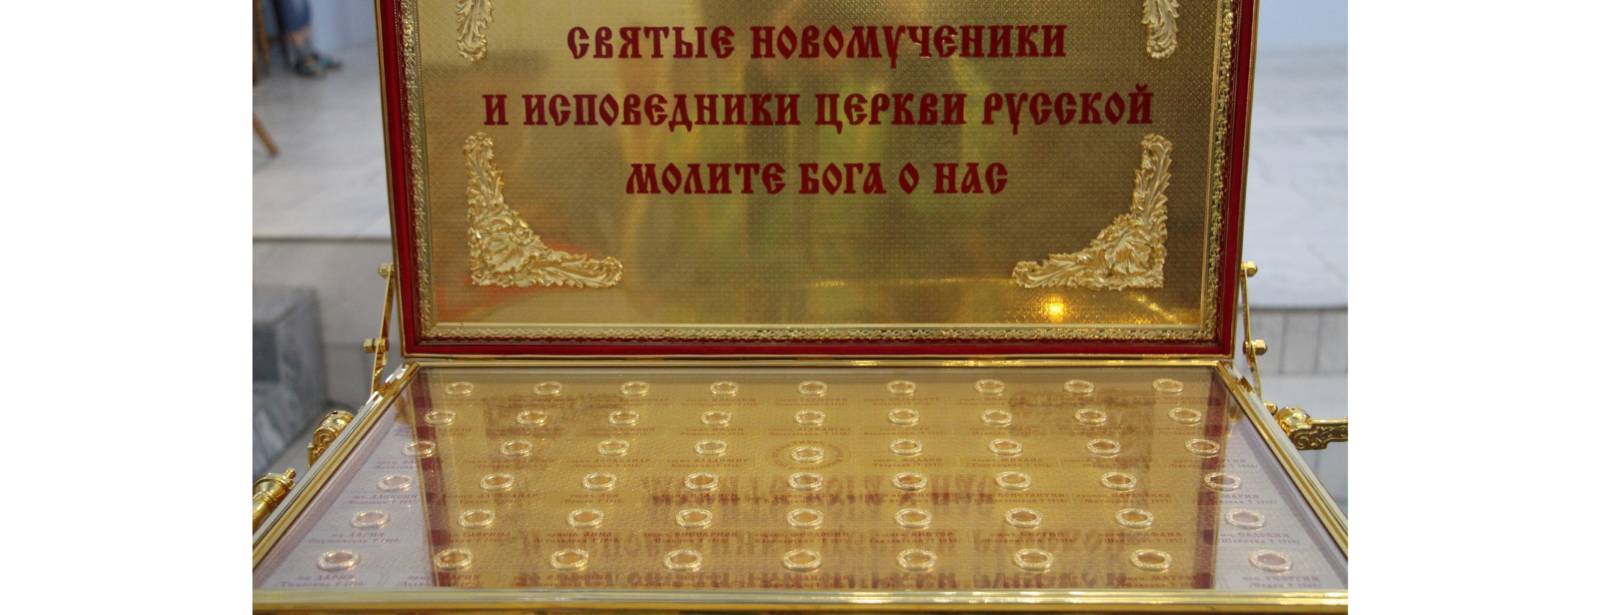 В Урюпинскую епархию был доставлен ковчег с частицами мощей почитаемых новомучеников и исповедников Русской Православной Церкви.